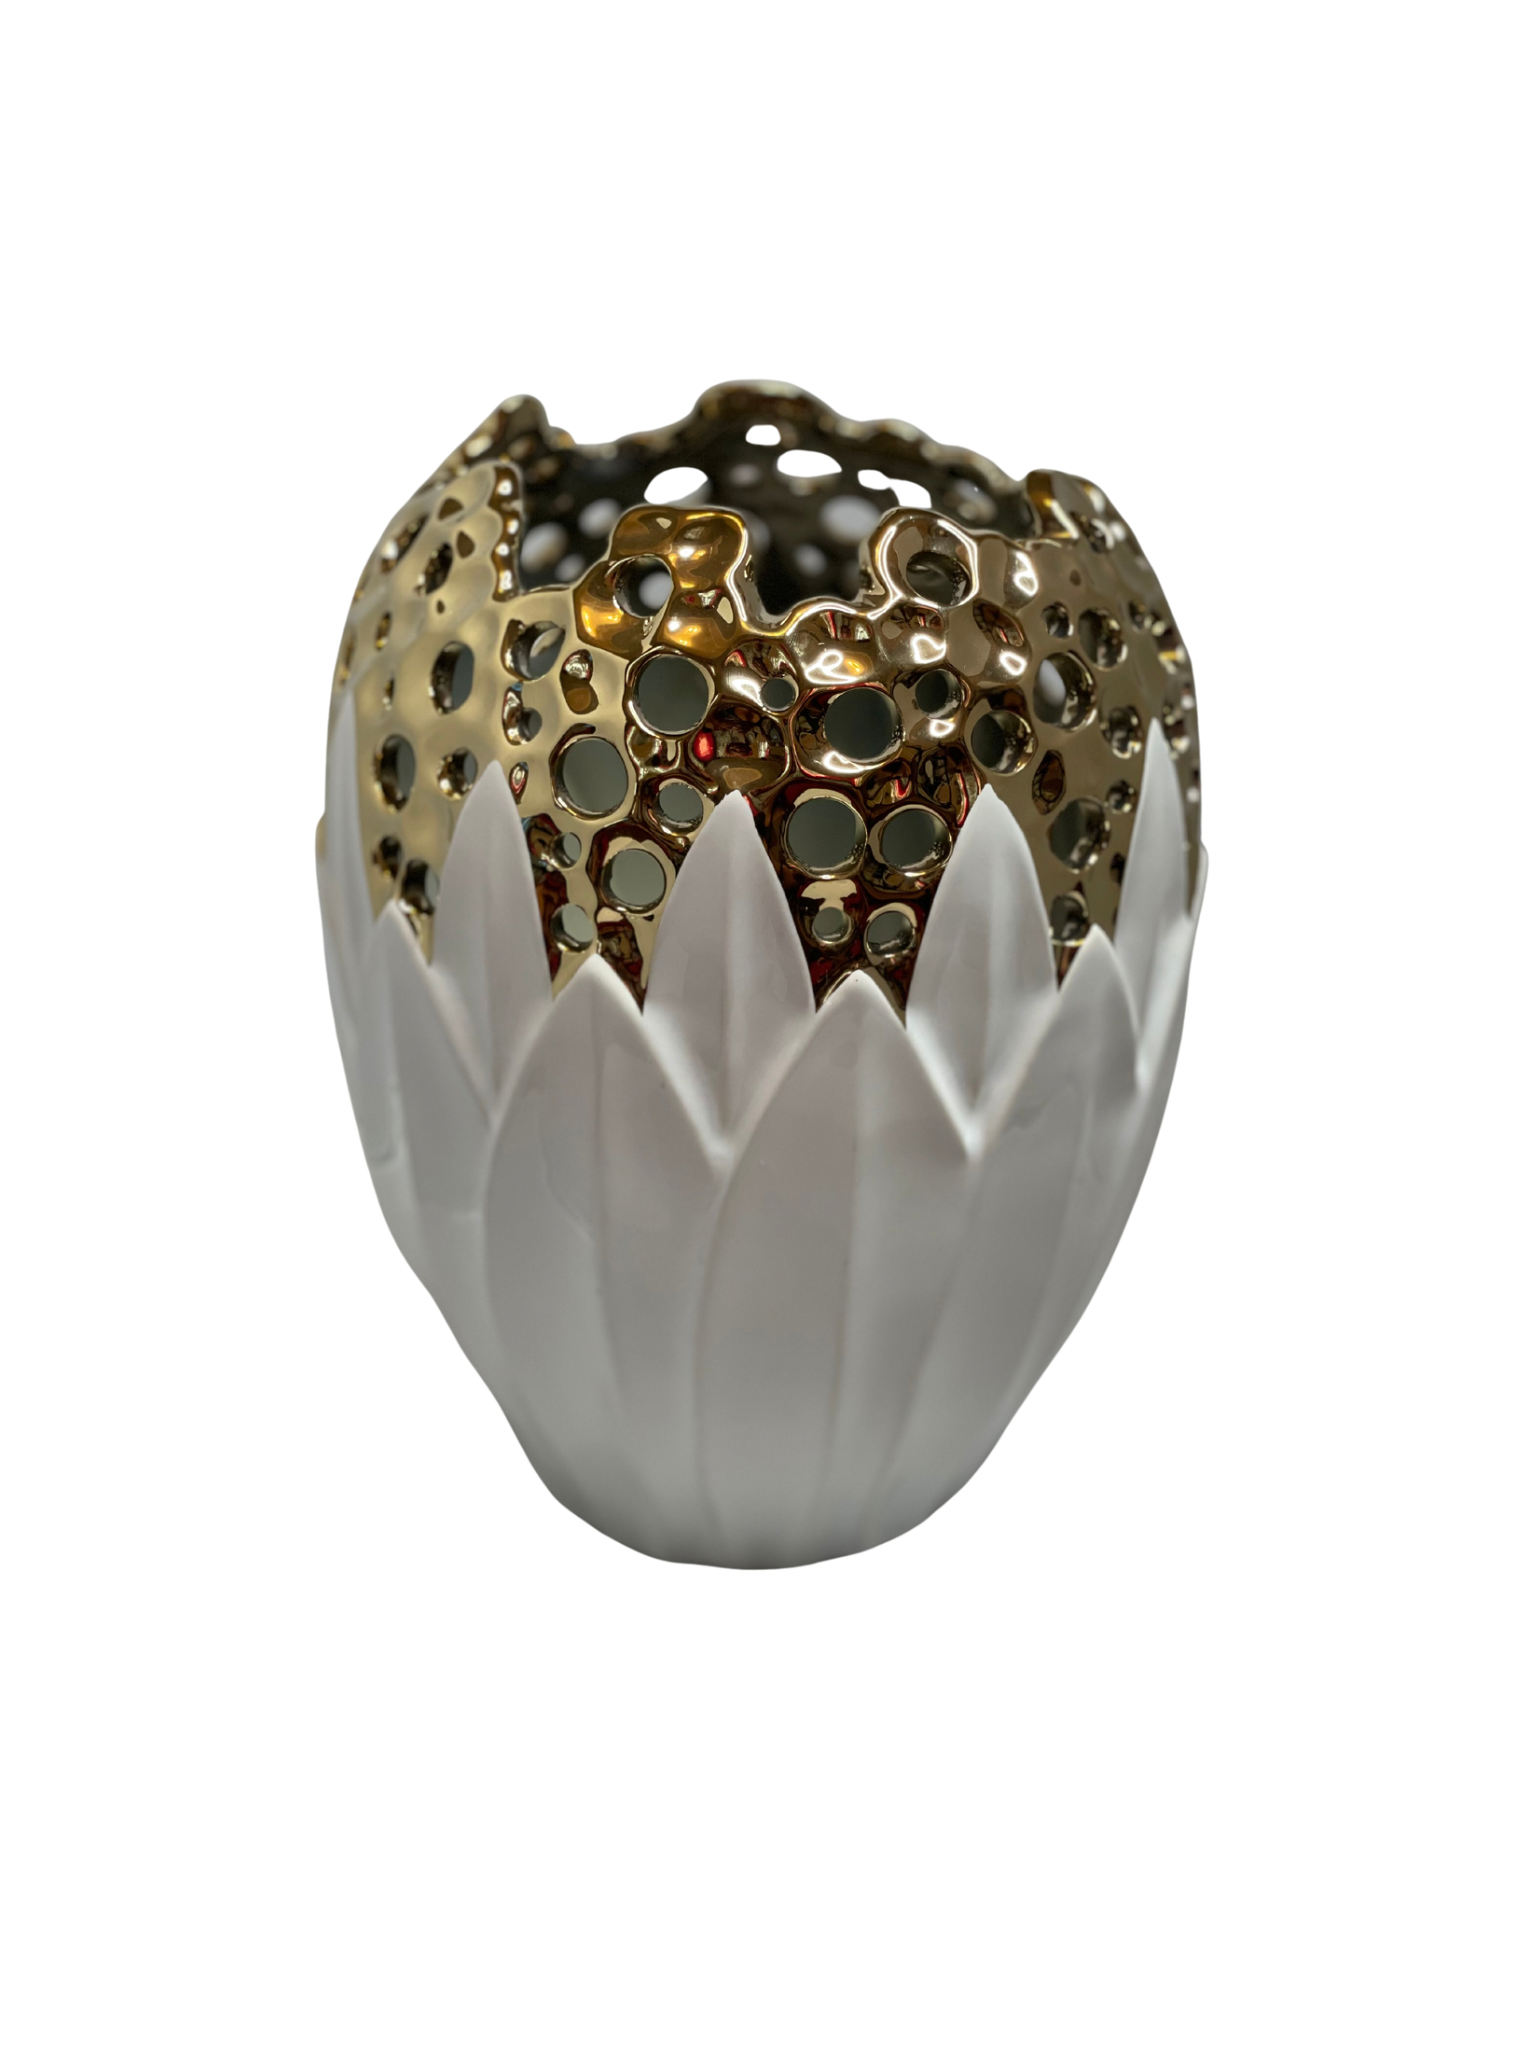 Luxury White and Gold Porcelain Vase